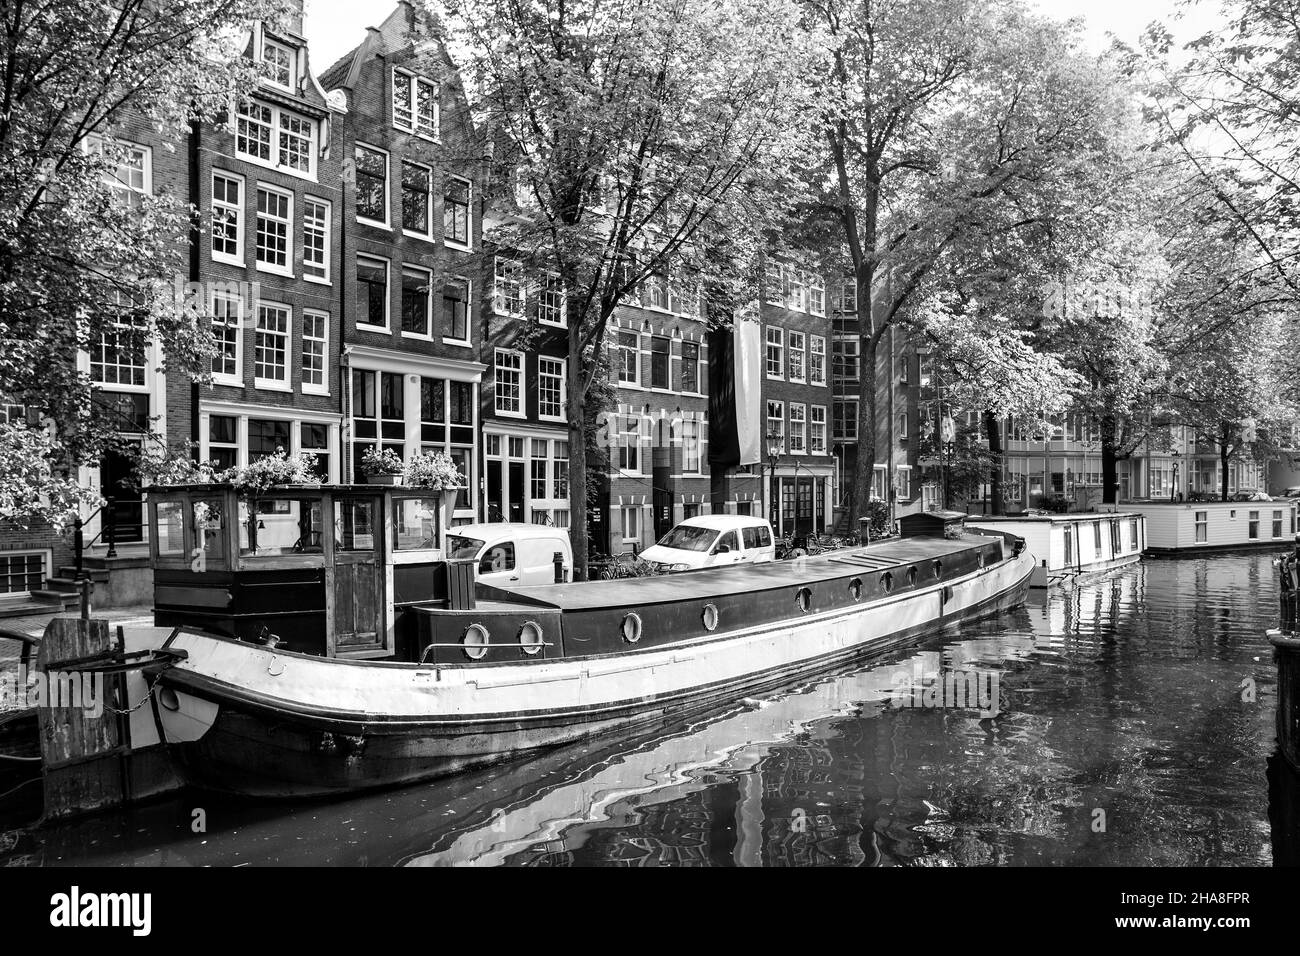 Canal à Amsterdam avec des bateaux.Paysage urbain noir et blanc.Pays-Bas Banque D'Images